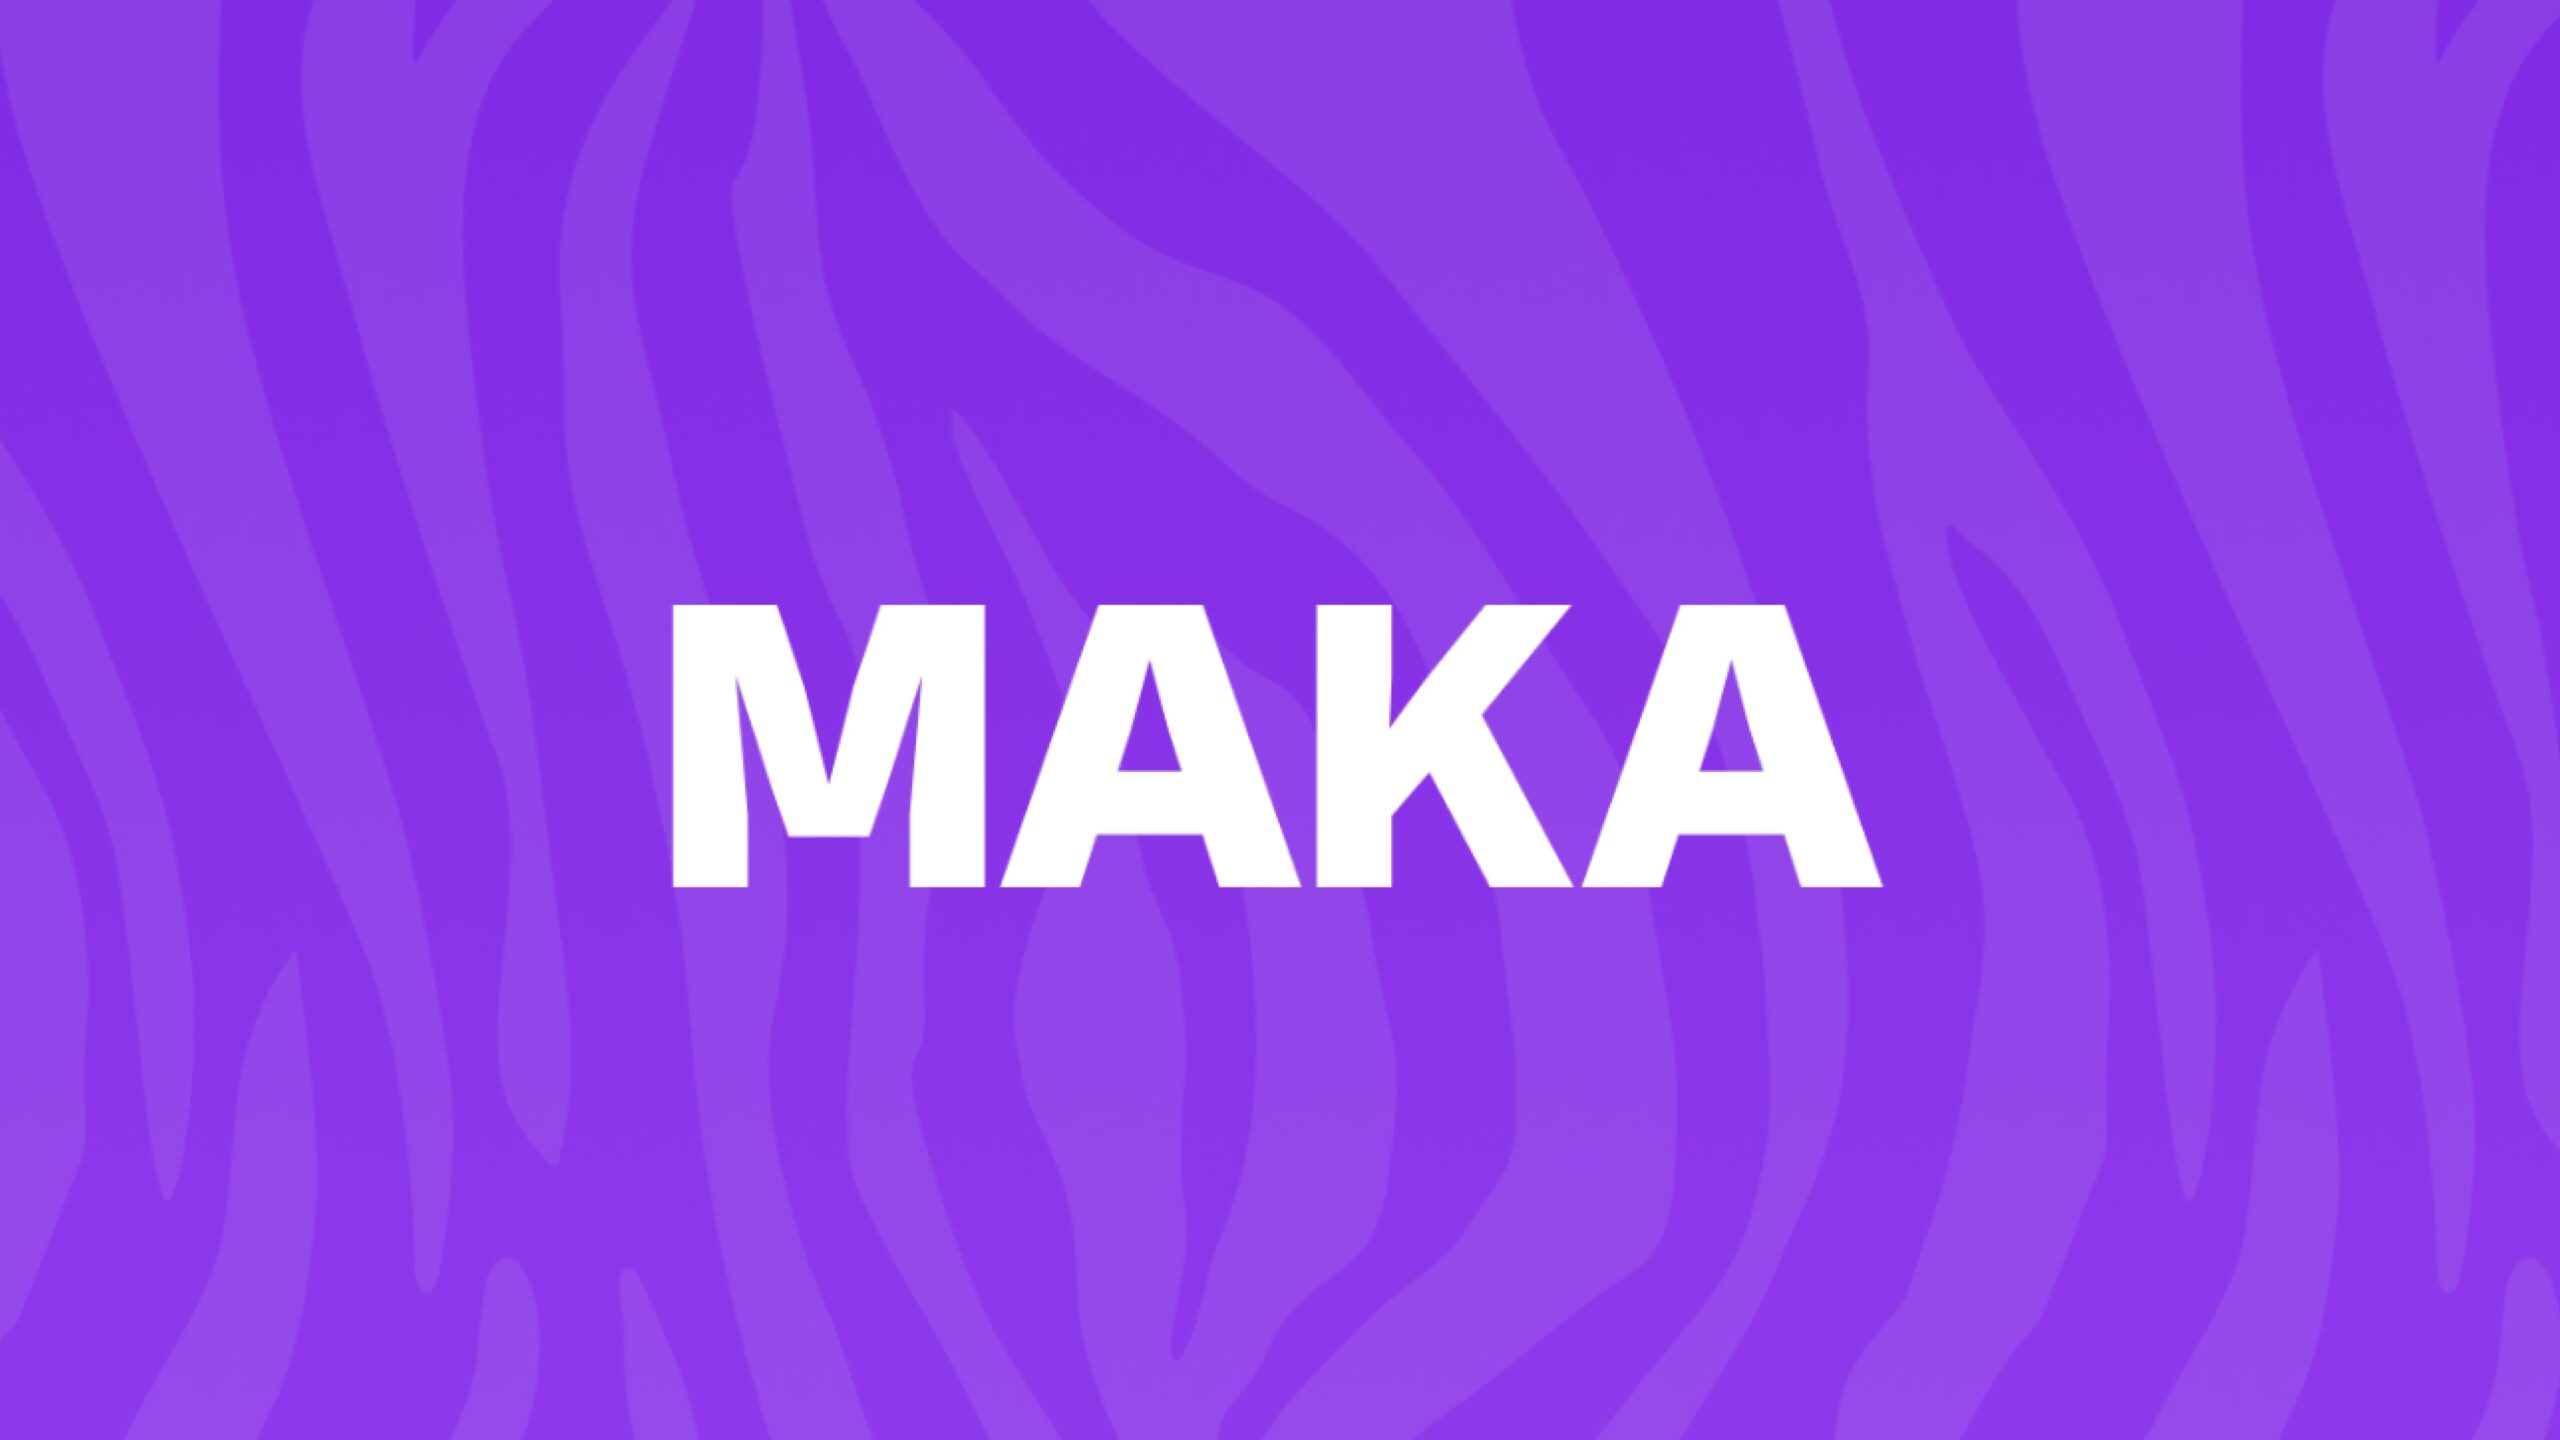 ソーシャル・コマース・プラットフォーム「Maka」、アフリカでのファッション・美容製品の購入を簡素化するため265万ドルを調達